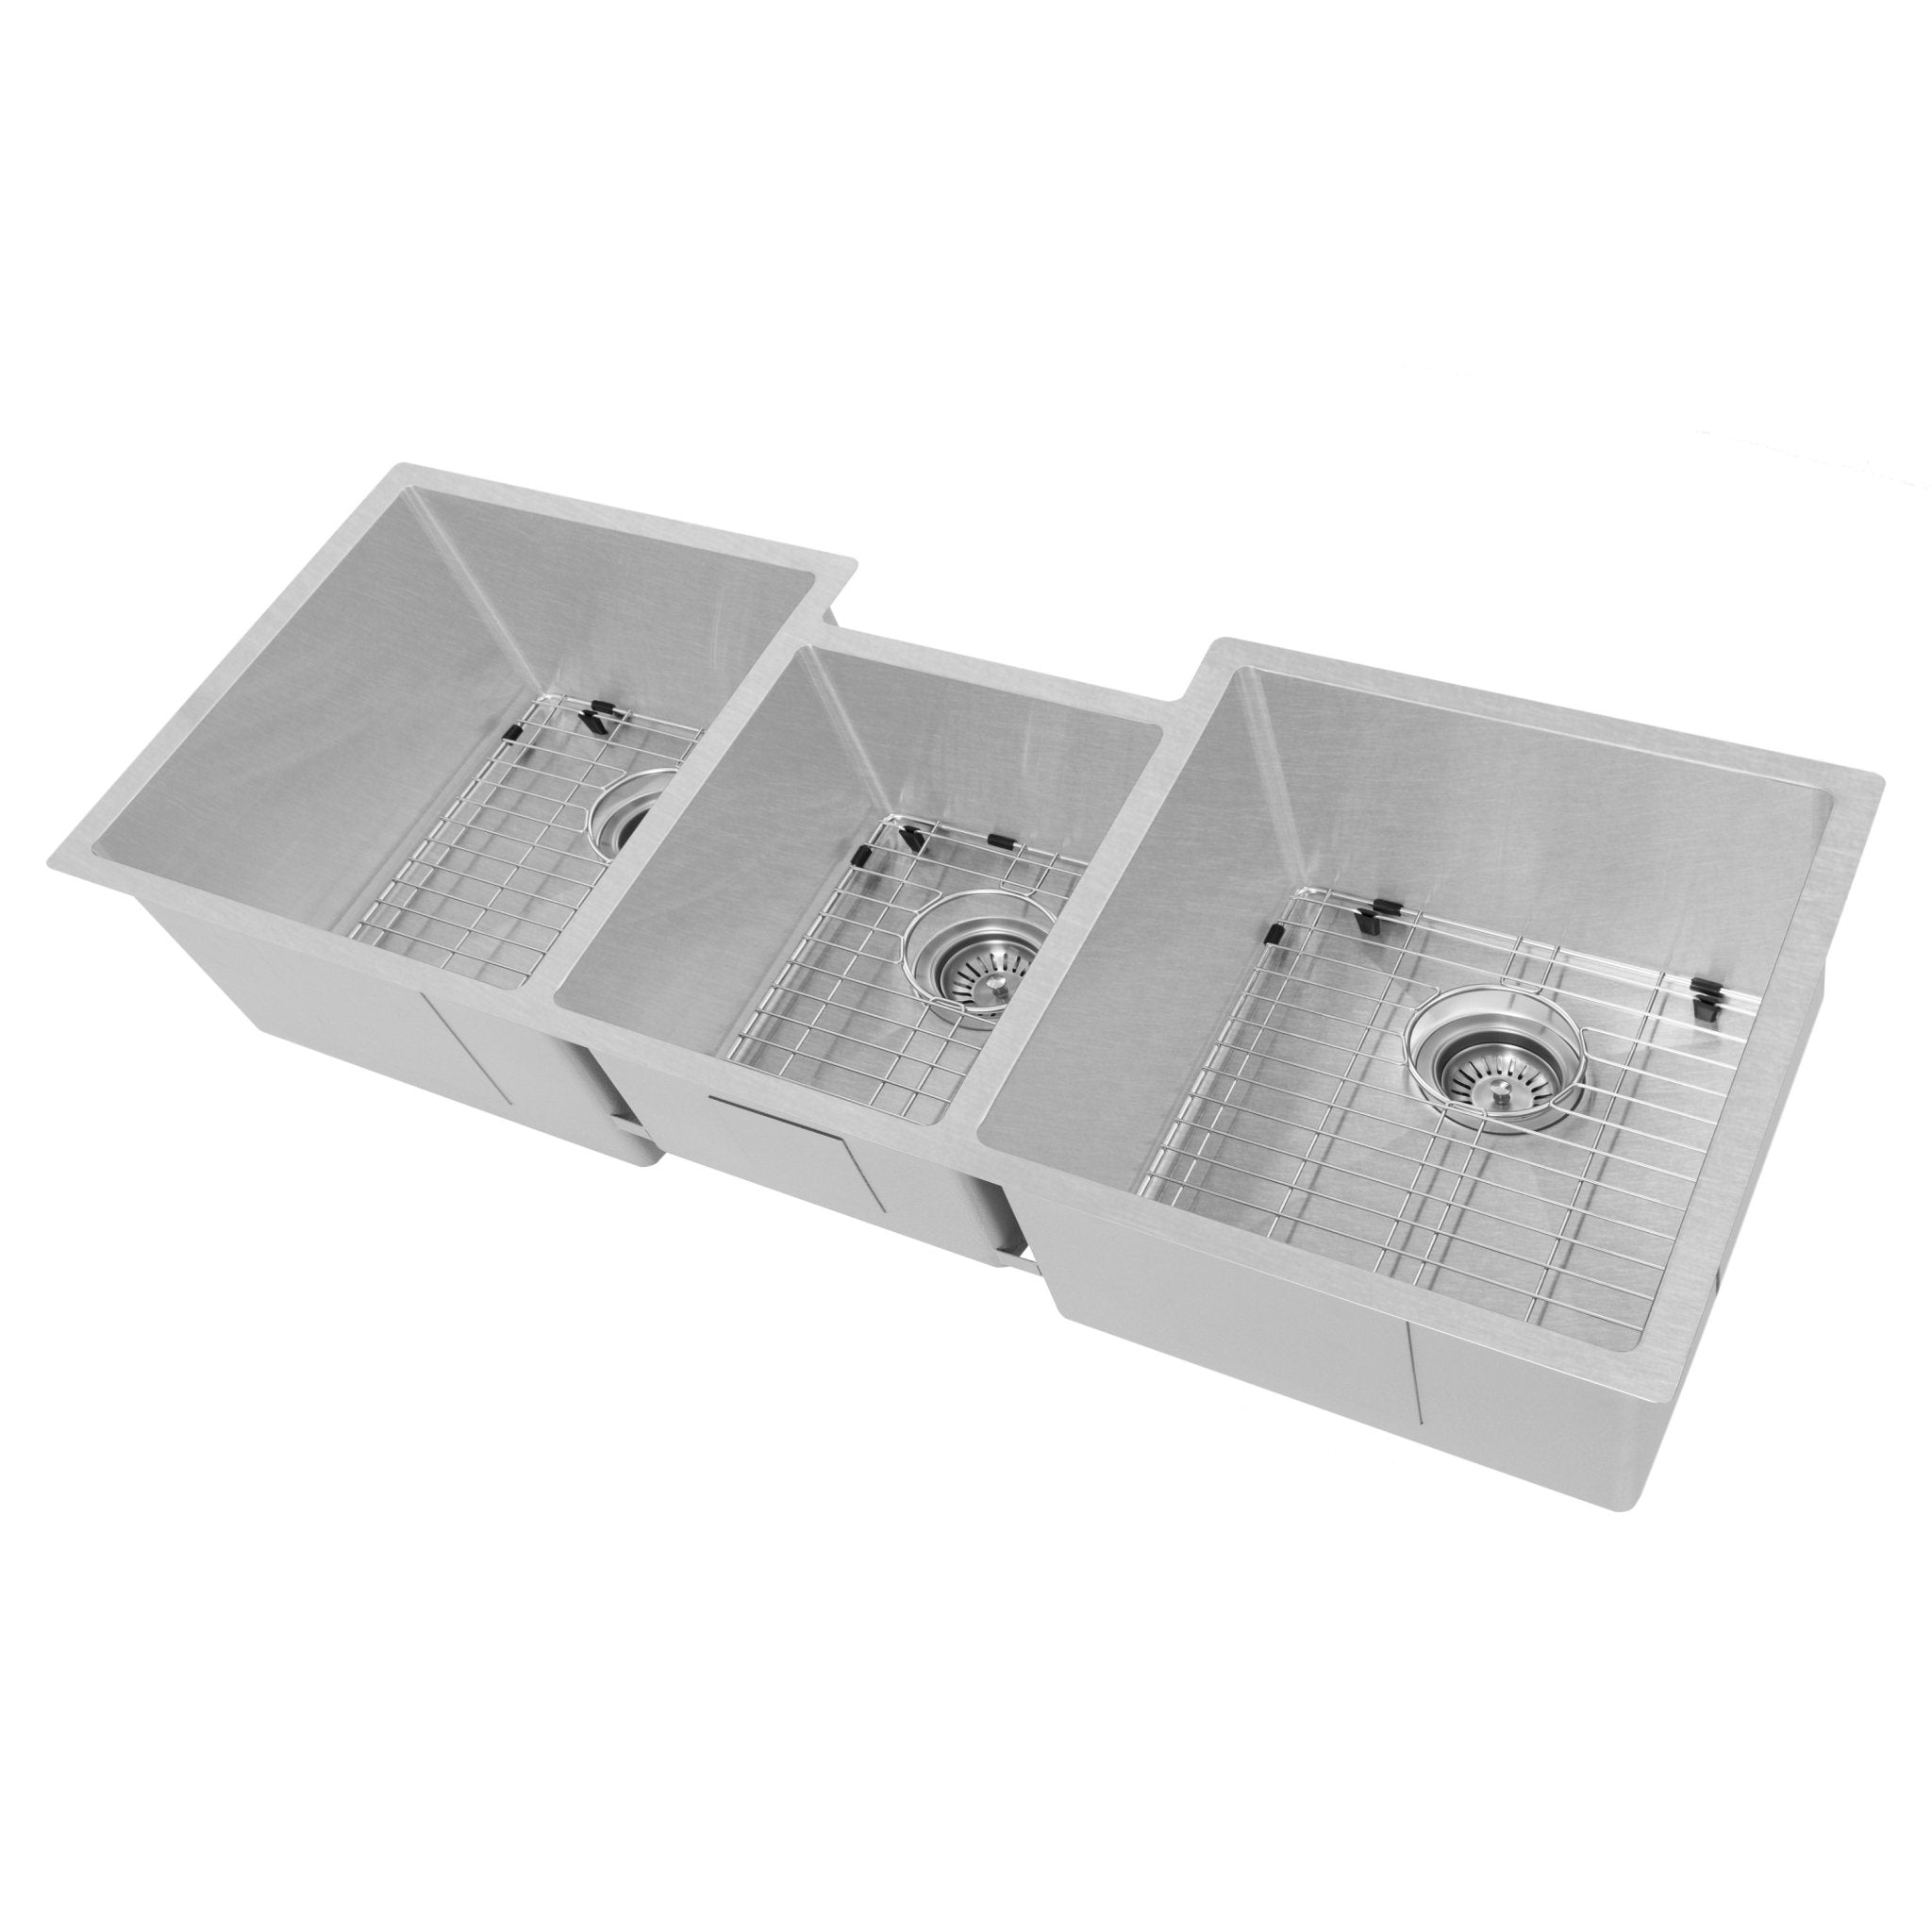 ZLINE Breckenridge 45 Inch Undermount Single Bowl Sink with Accessories (SLT-45) - Rustic Kitchen & Bath - Sinks - Rustic Kitchen & Bath